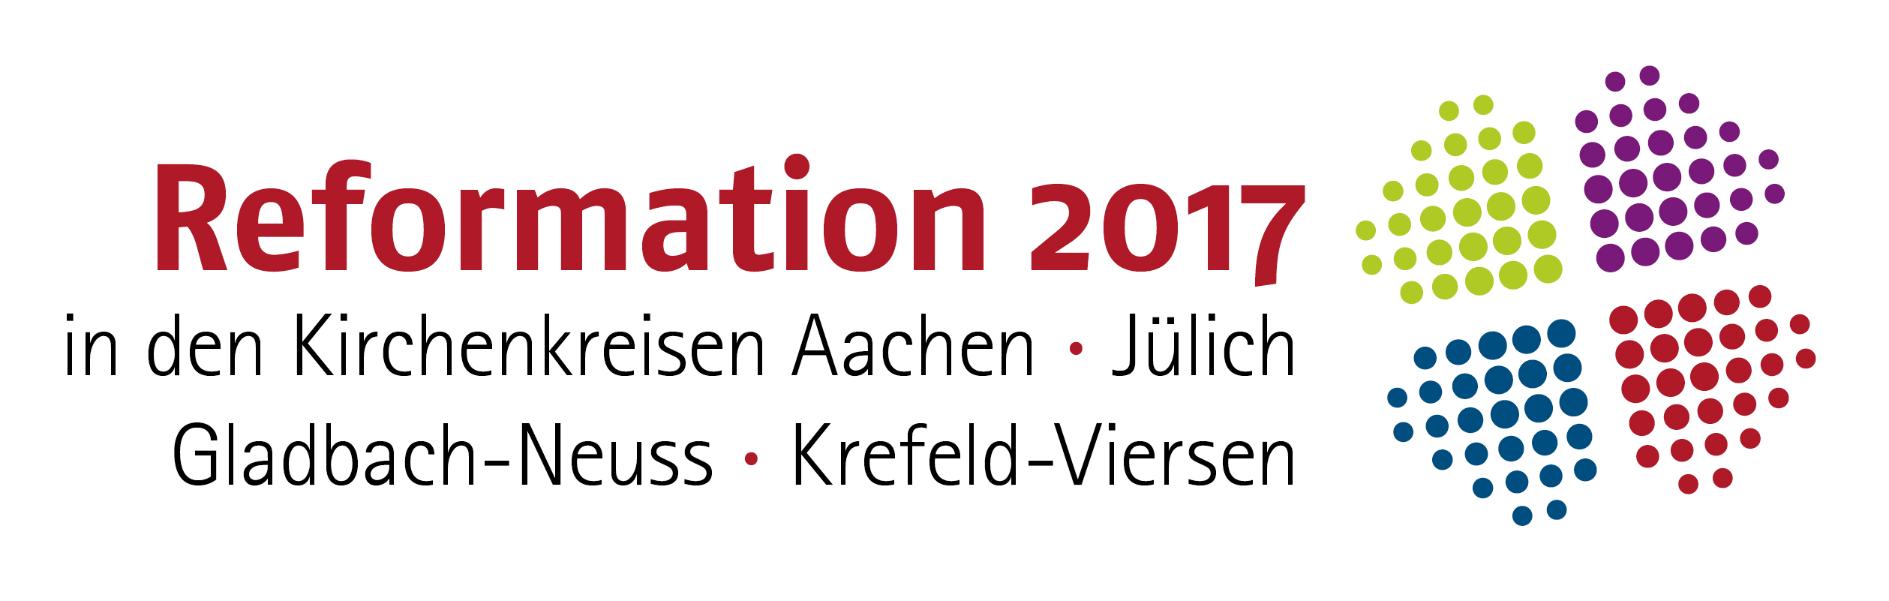 Reformation 2017 (c) Kirchenkreis Aachen der Evangelischen Kirche im Rheinland (Ersteller: Kirchenkreis Aachen der Evangelischen Kirche im Rheinland)